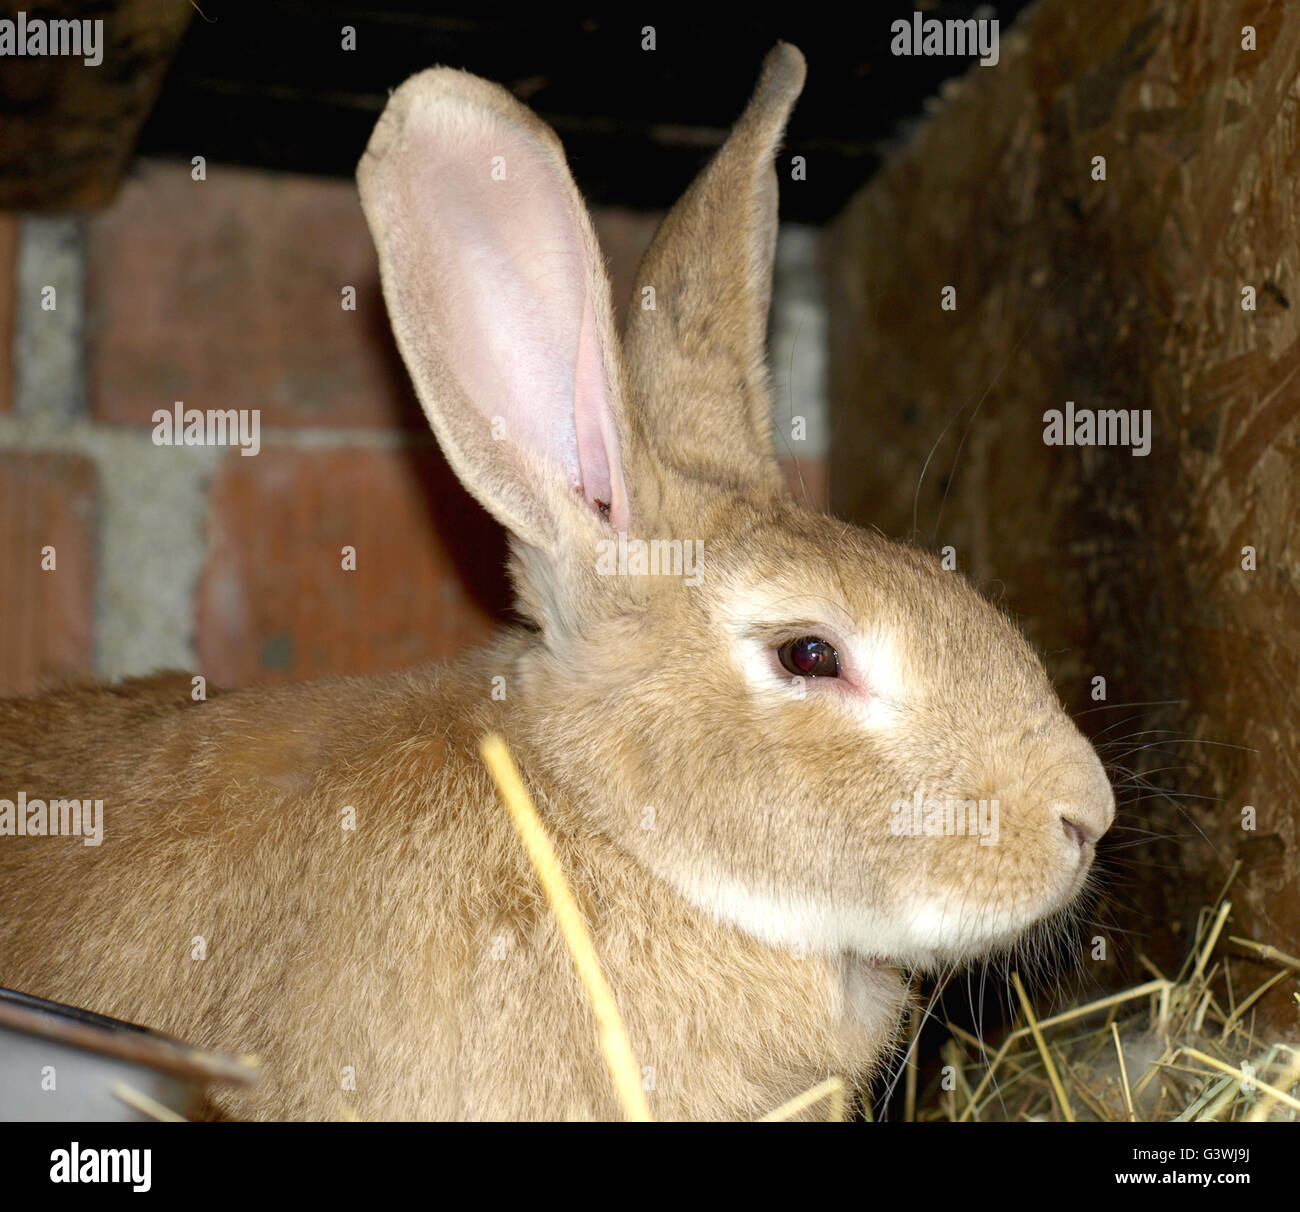 Kaninchen auf Bauernhof mit Tieren im Kaninchenstall Stockfotografie ...